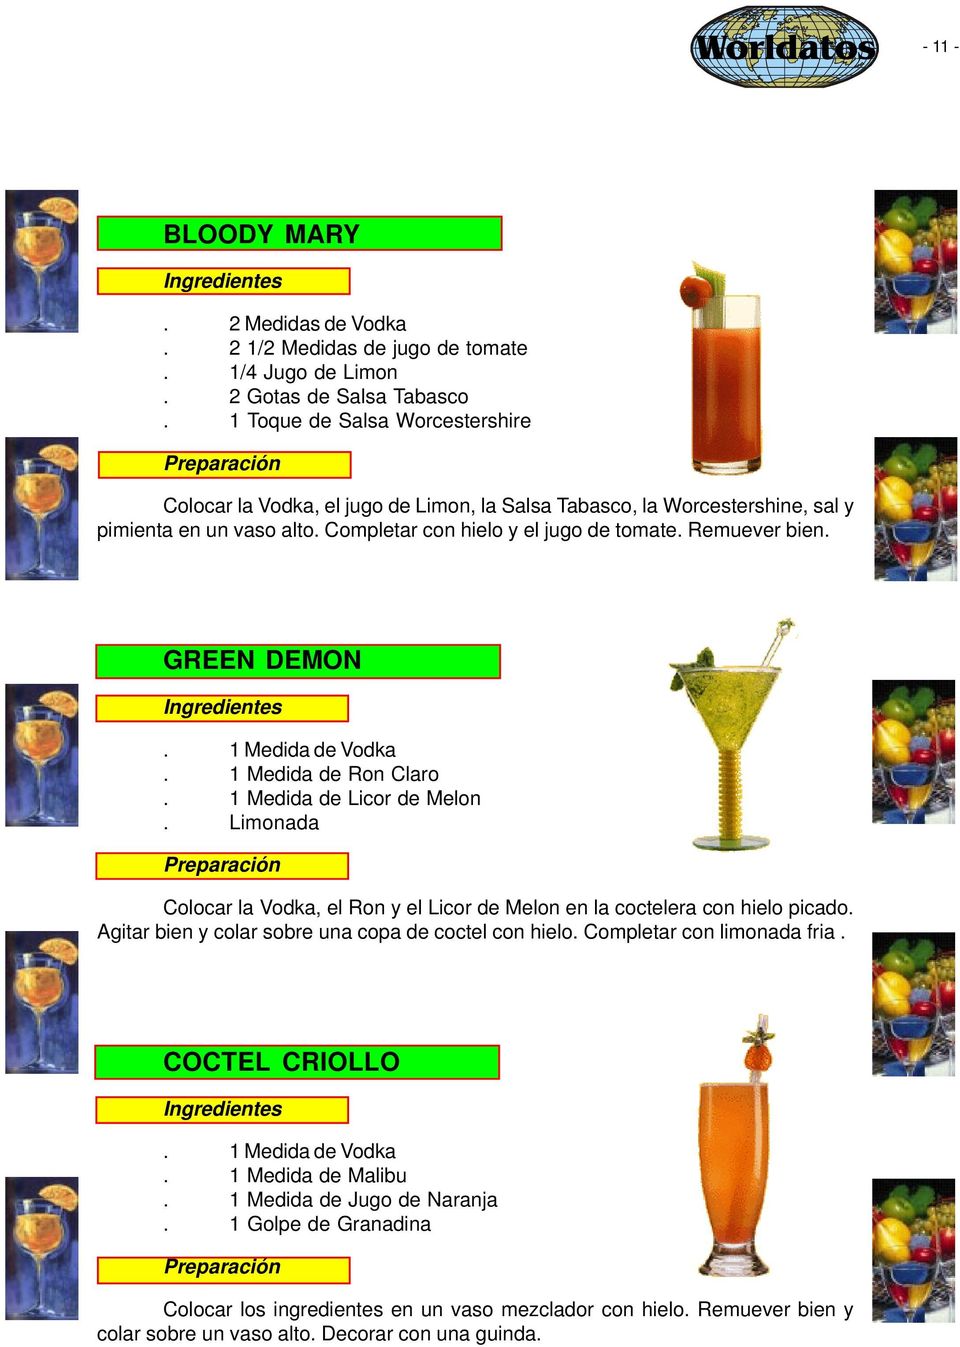 Remuever bien. GREEN DEMON Ingredientes. 1 Medida de Vodka. 1 Medida de Ron Claro. 1 Medida de Licor de Melon.